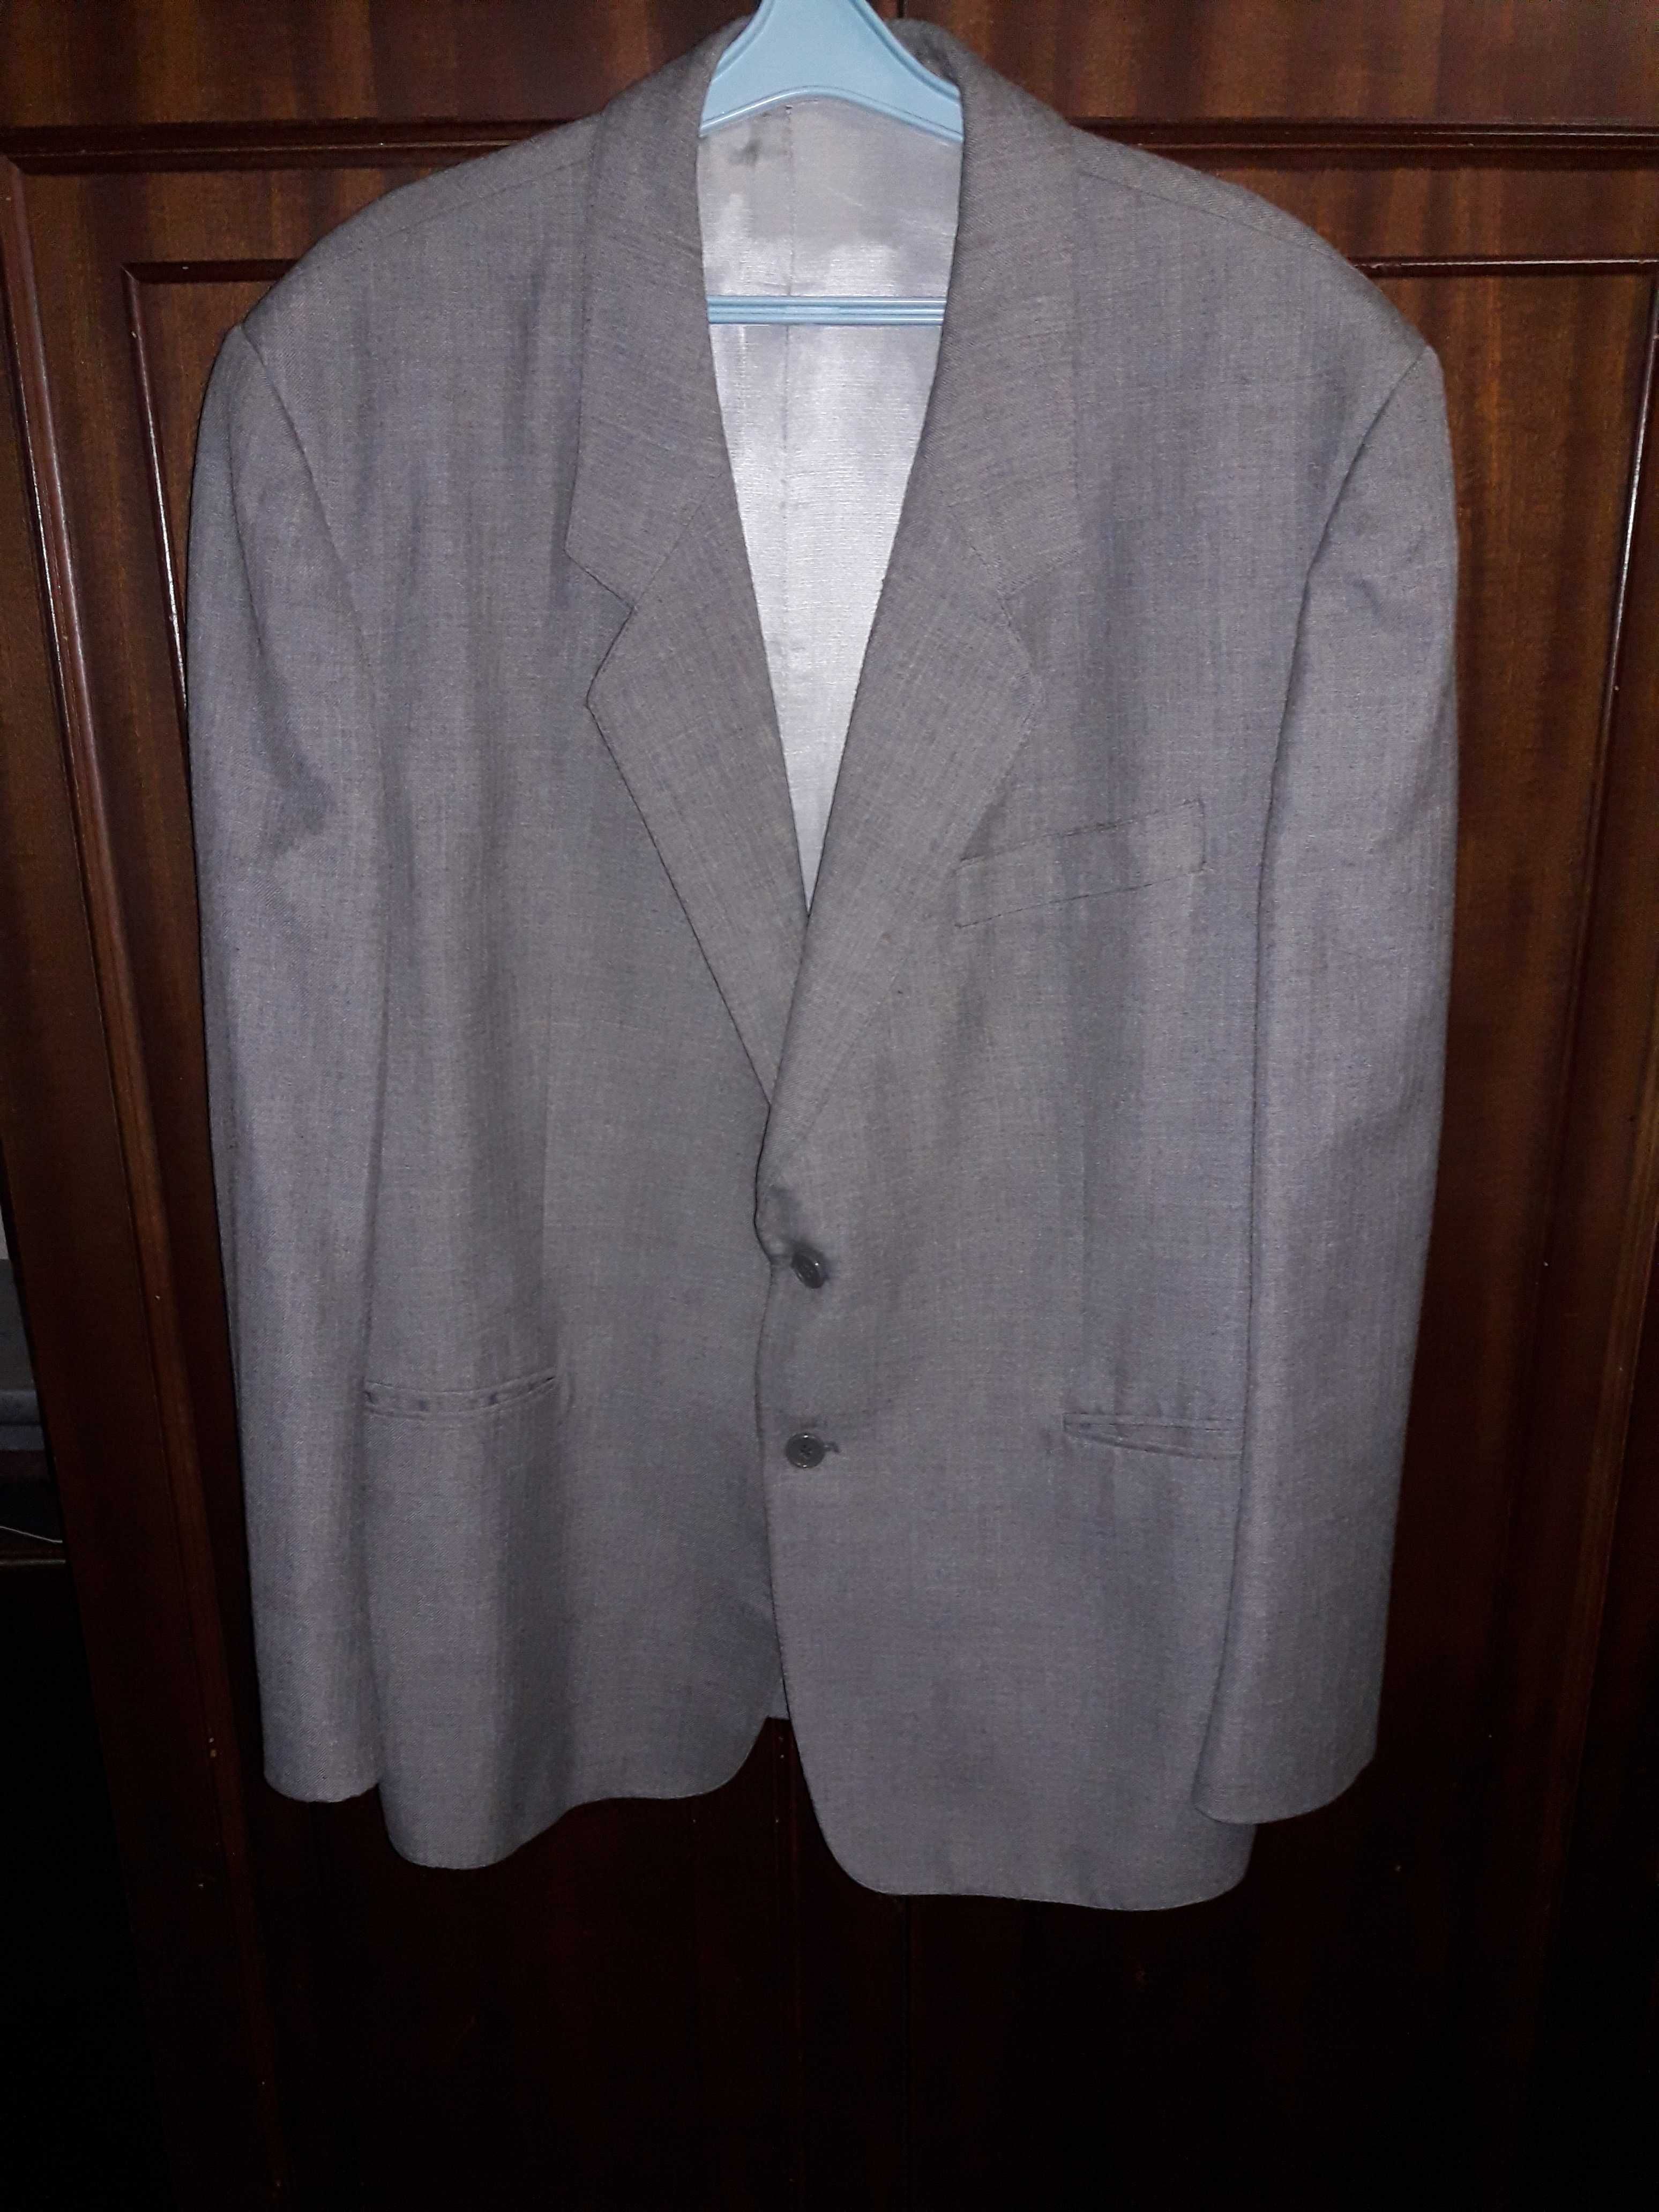 Пиджак серый "Tarnospin", Польша, 56 размер, в подарок брюки от него